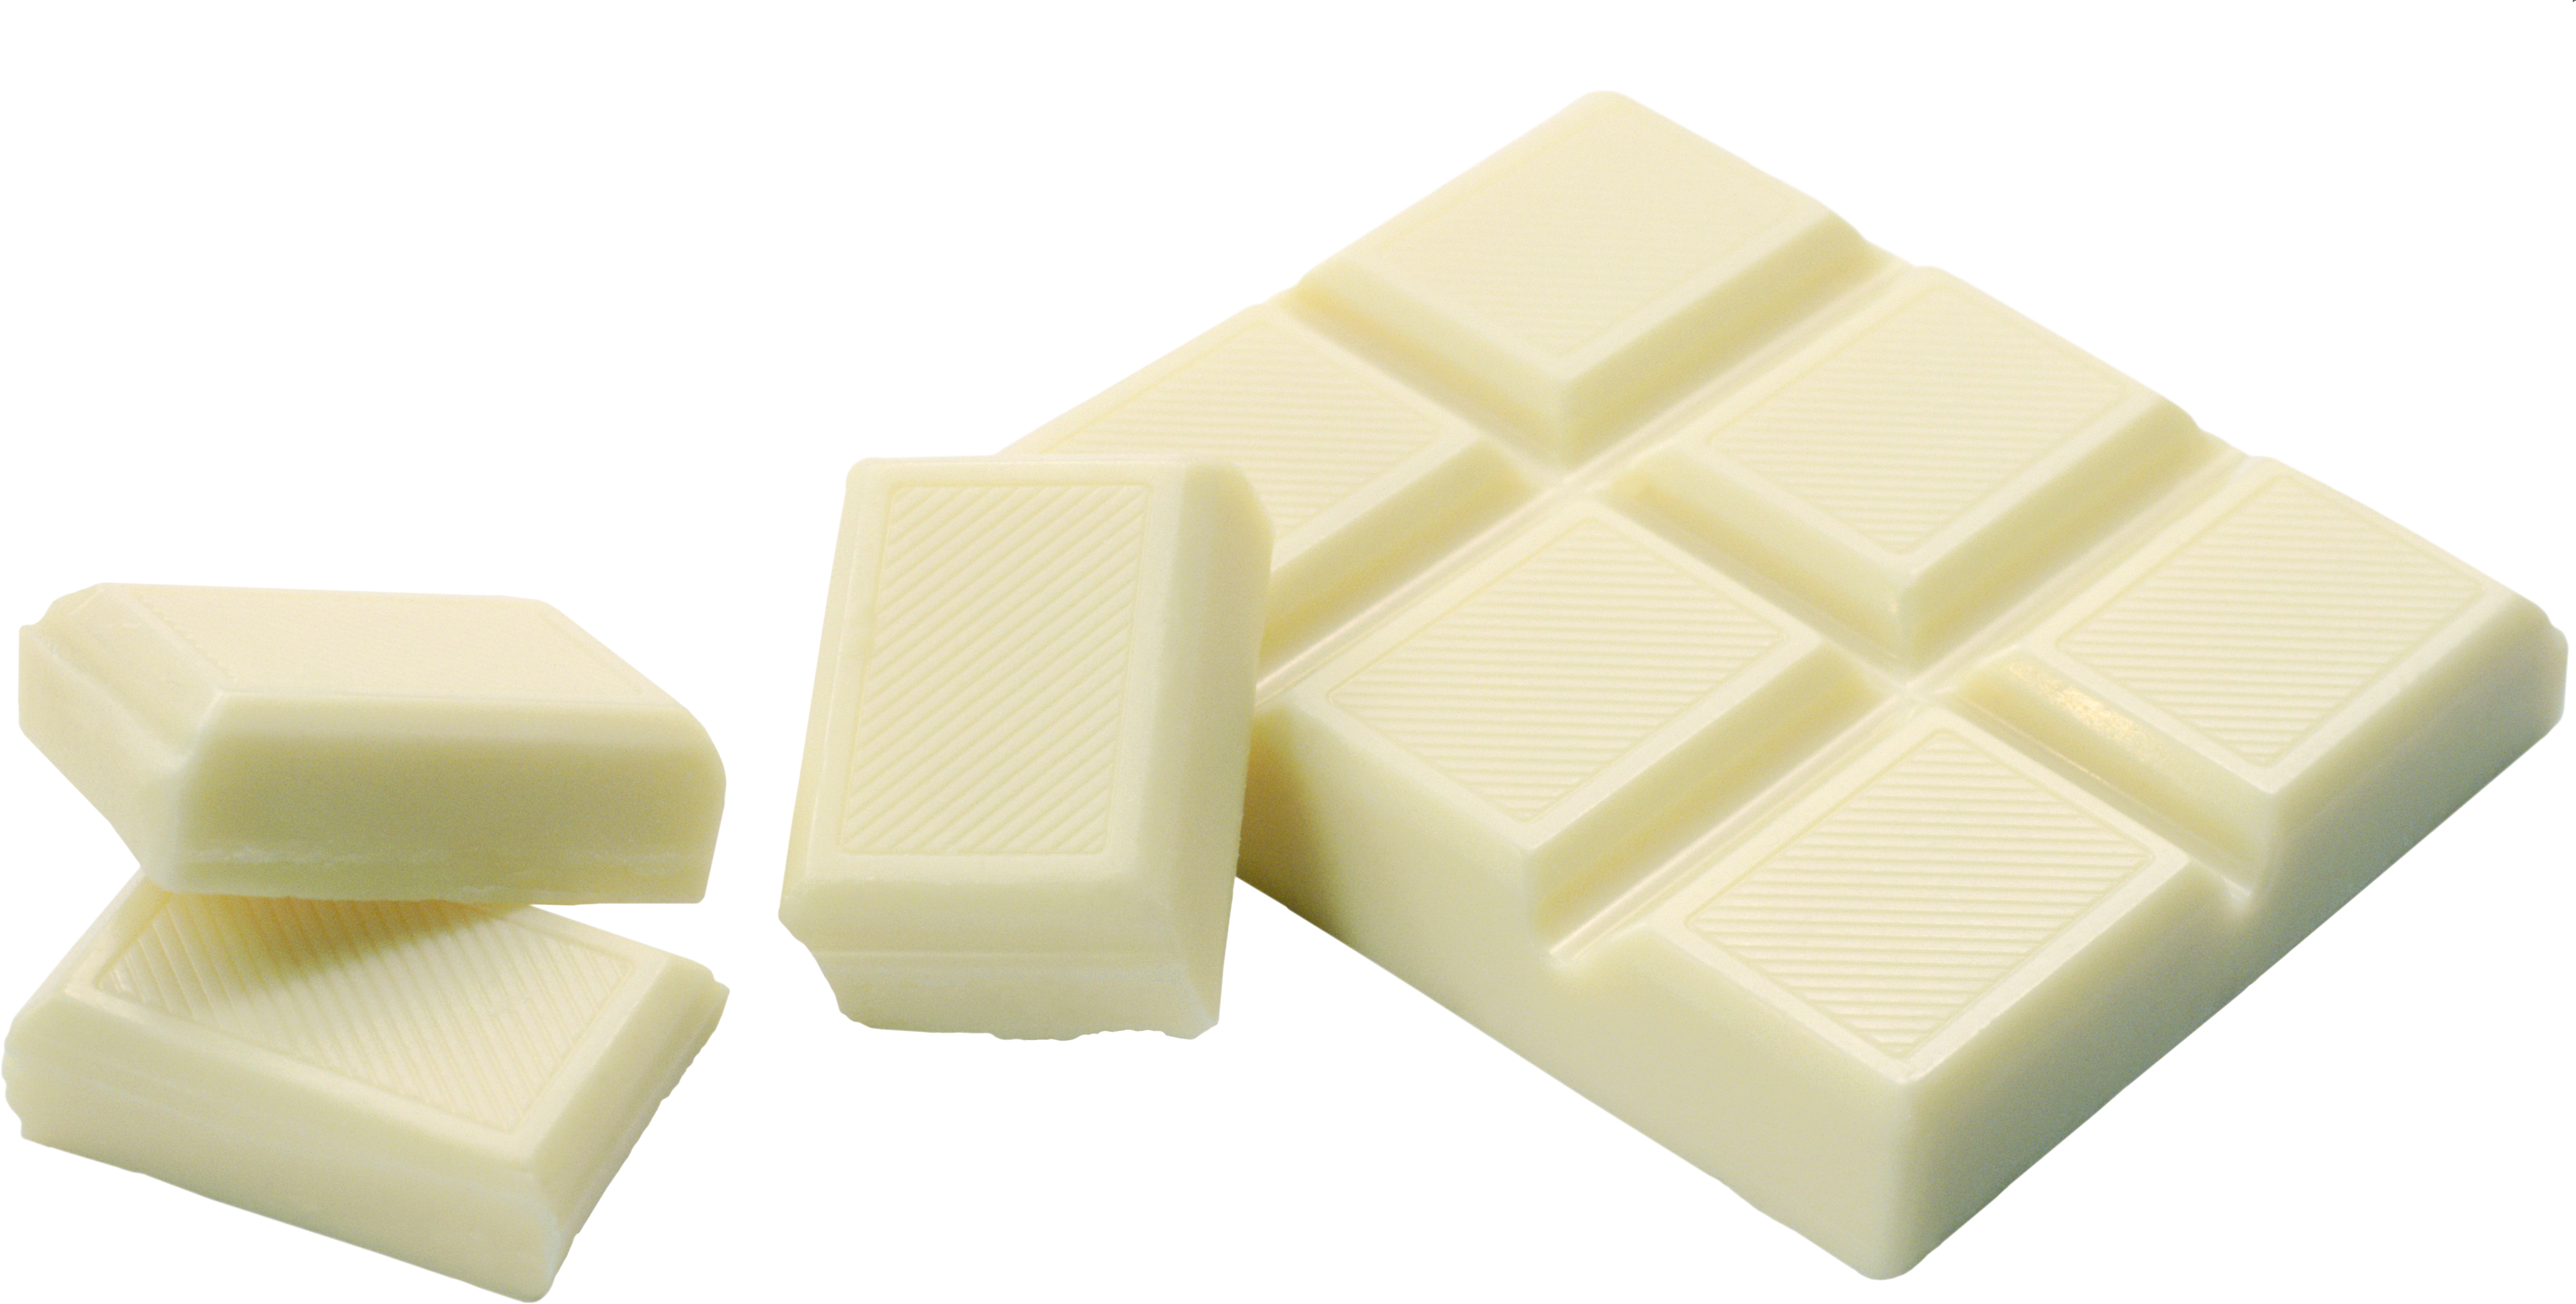 सफेद चॉकलेट